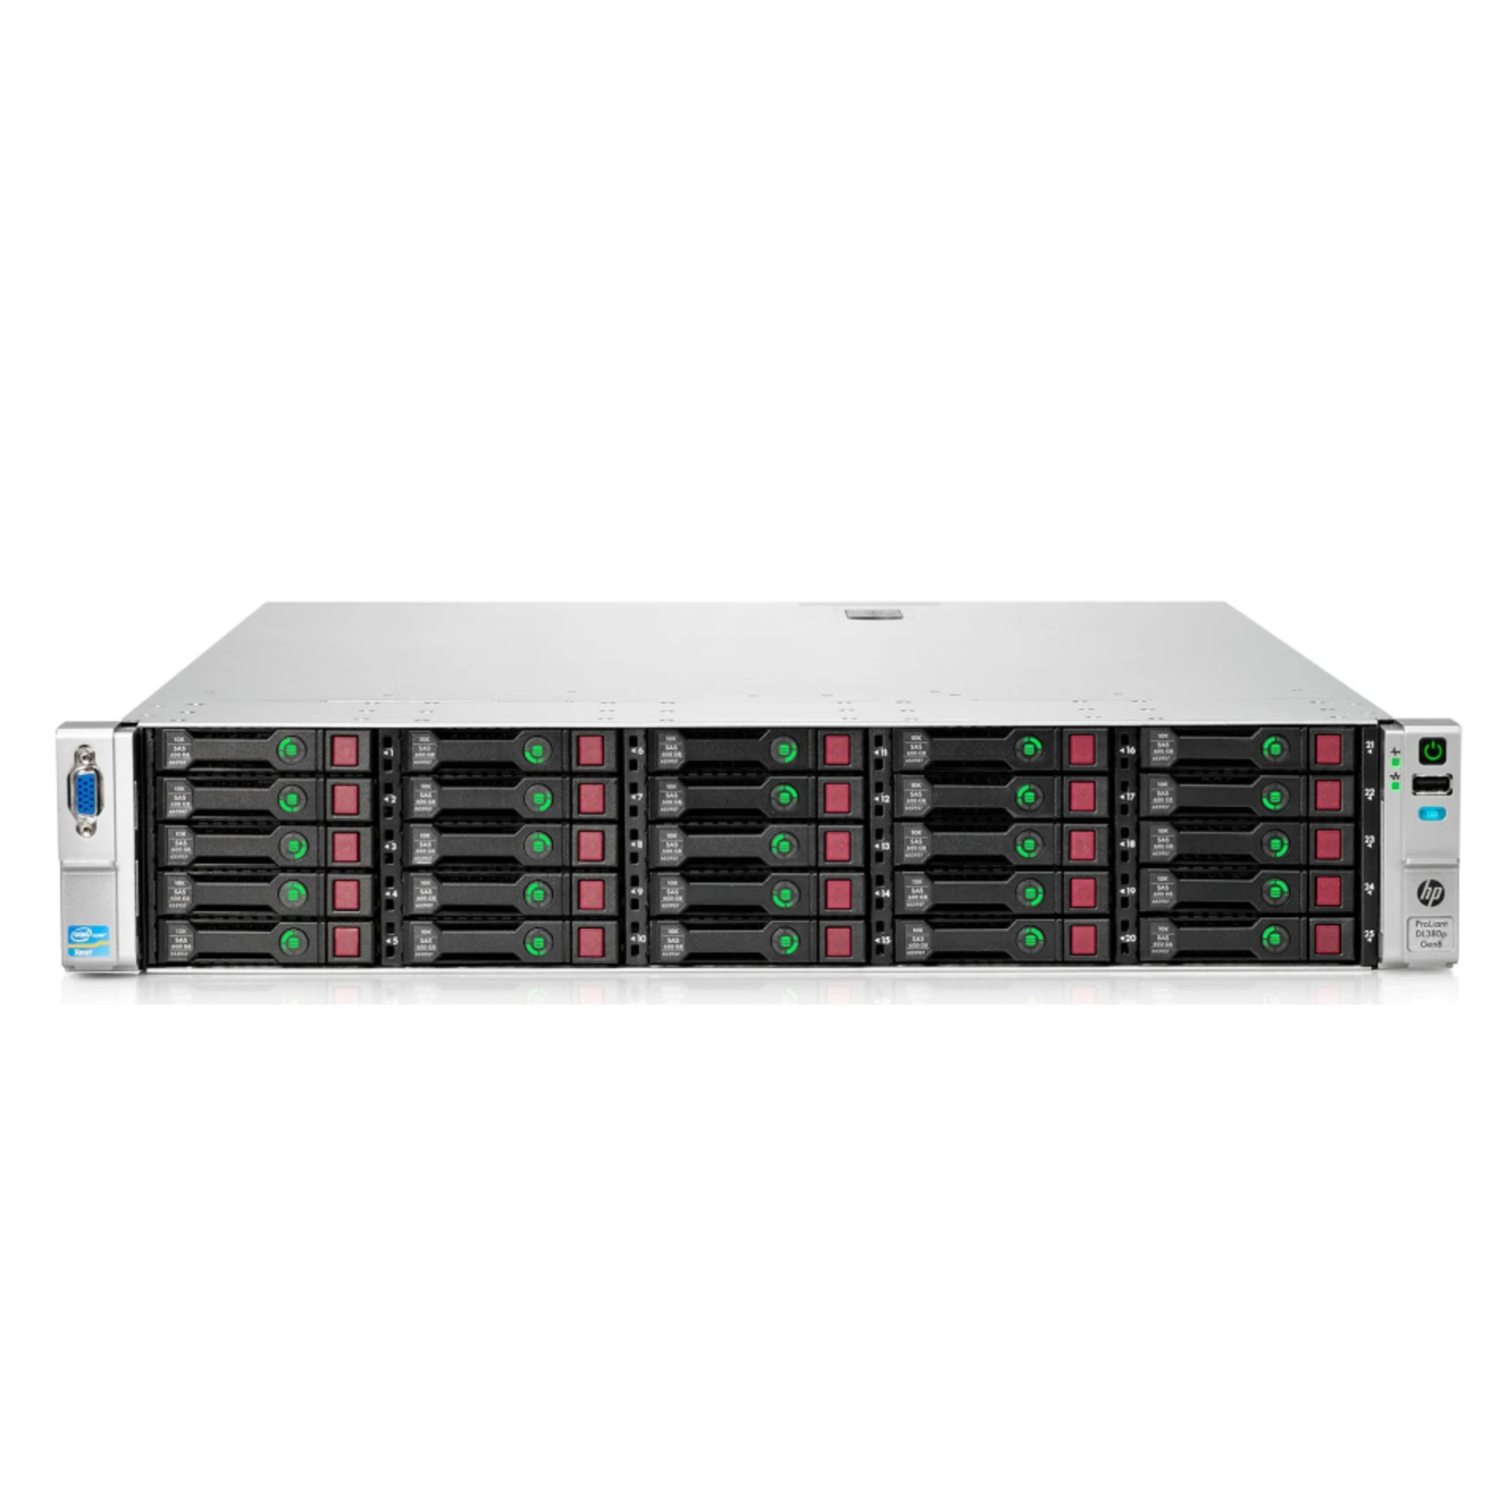 Сервер HP Proliant DL380p Gen8, 2 процессора Intel Xeon 10C E5-2680v2, 25SFF, P420i/1GB FBWC